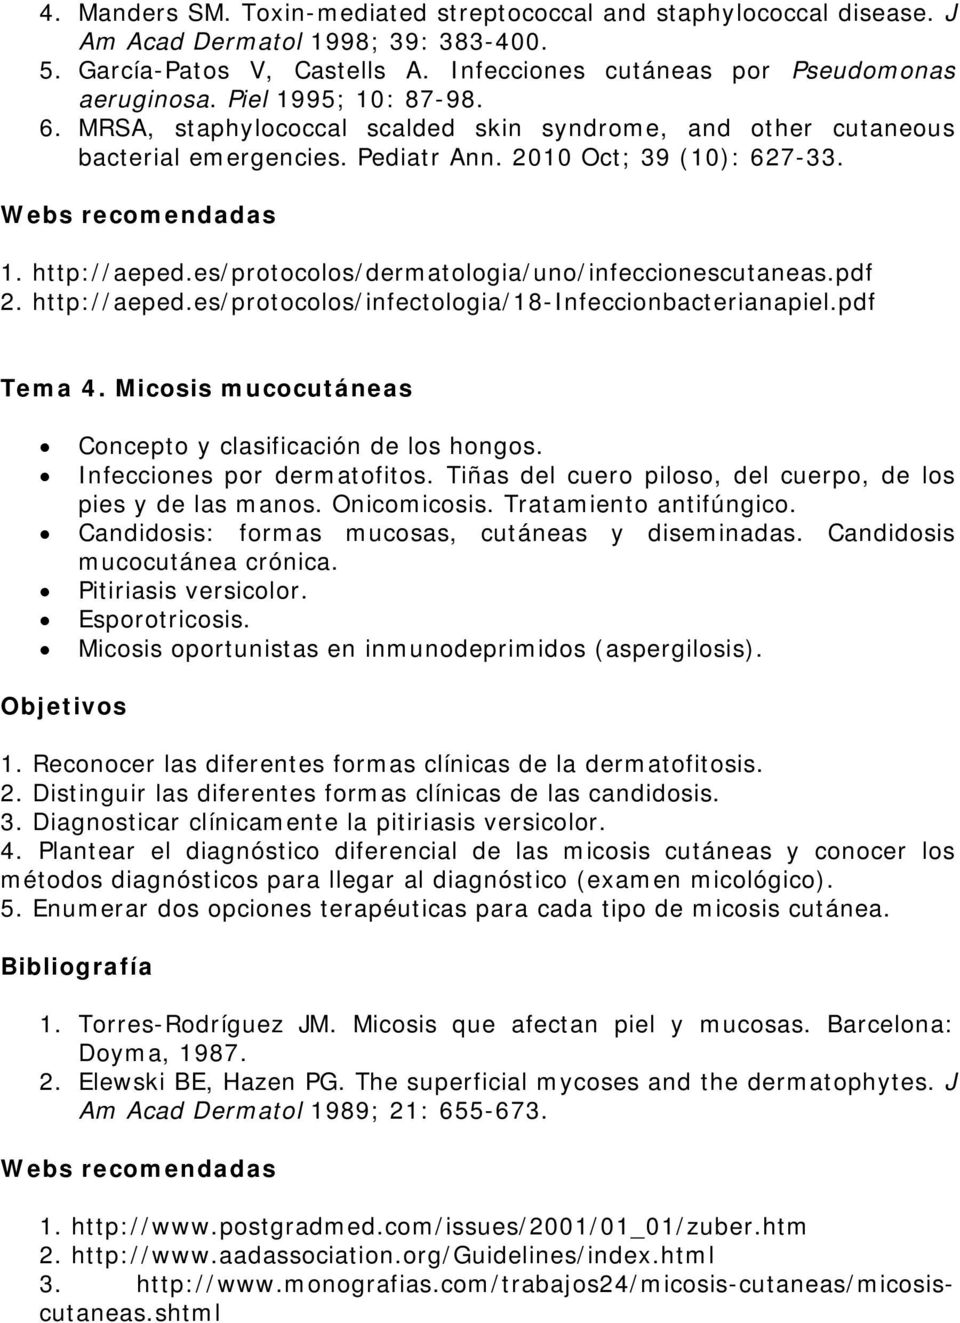 es/protocolos/dermatologia/uno/infeccionescutaneas.pdf 2. http://aeped.es/protocolos/infectologia/18-infeccionbacterianapiel.pdf Tema 4. Micosis mucocutáneas Concepto y clasificación de los hongos.